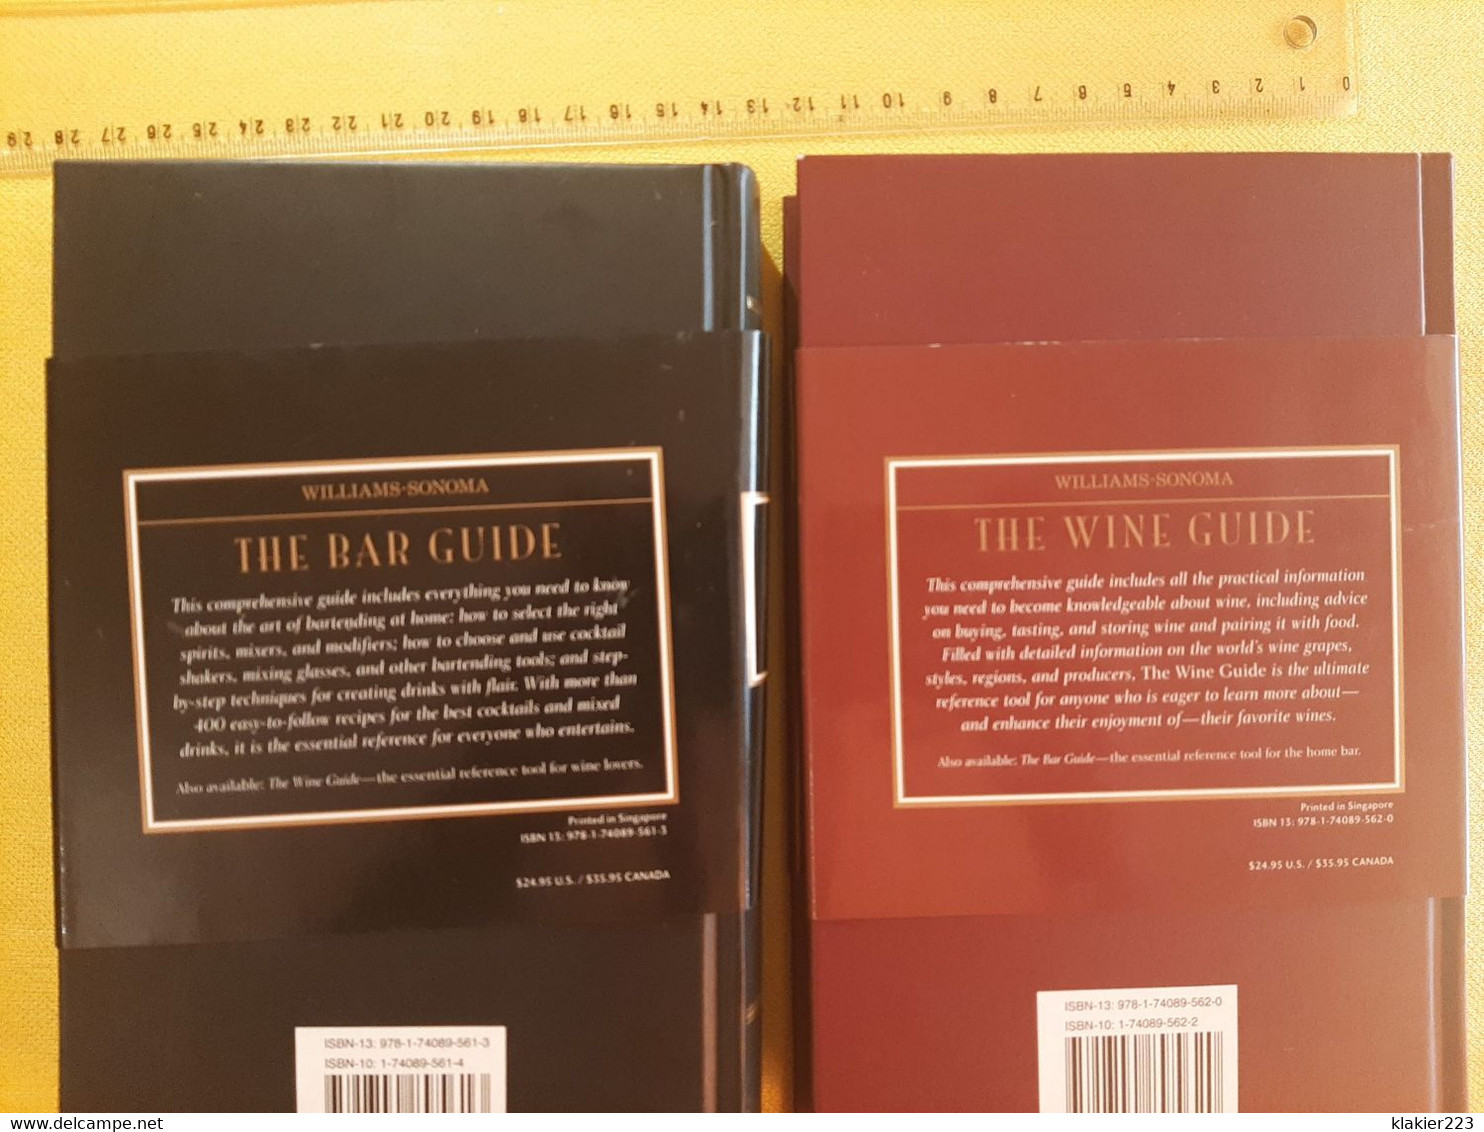 Williams-Sonoma - The Bar Guide / The Wine Guide - European